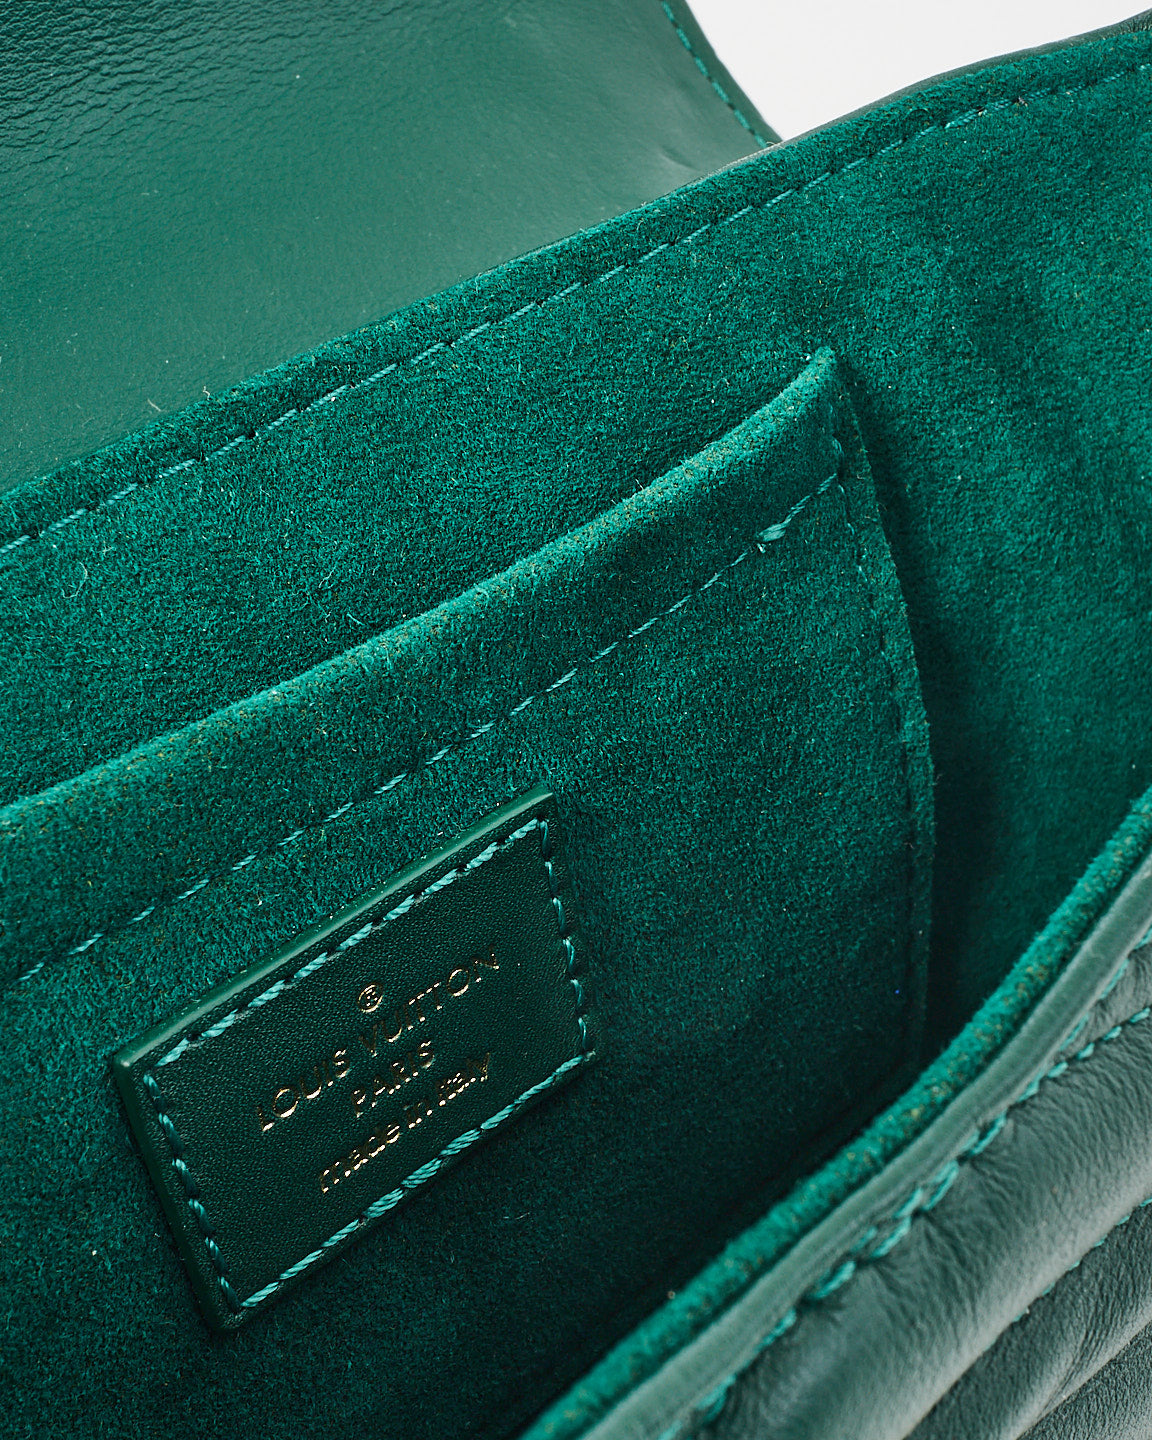 Louis Vuitton Chaîne New Wave en cuir vert émeraude PM